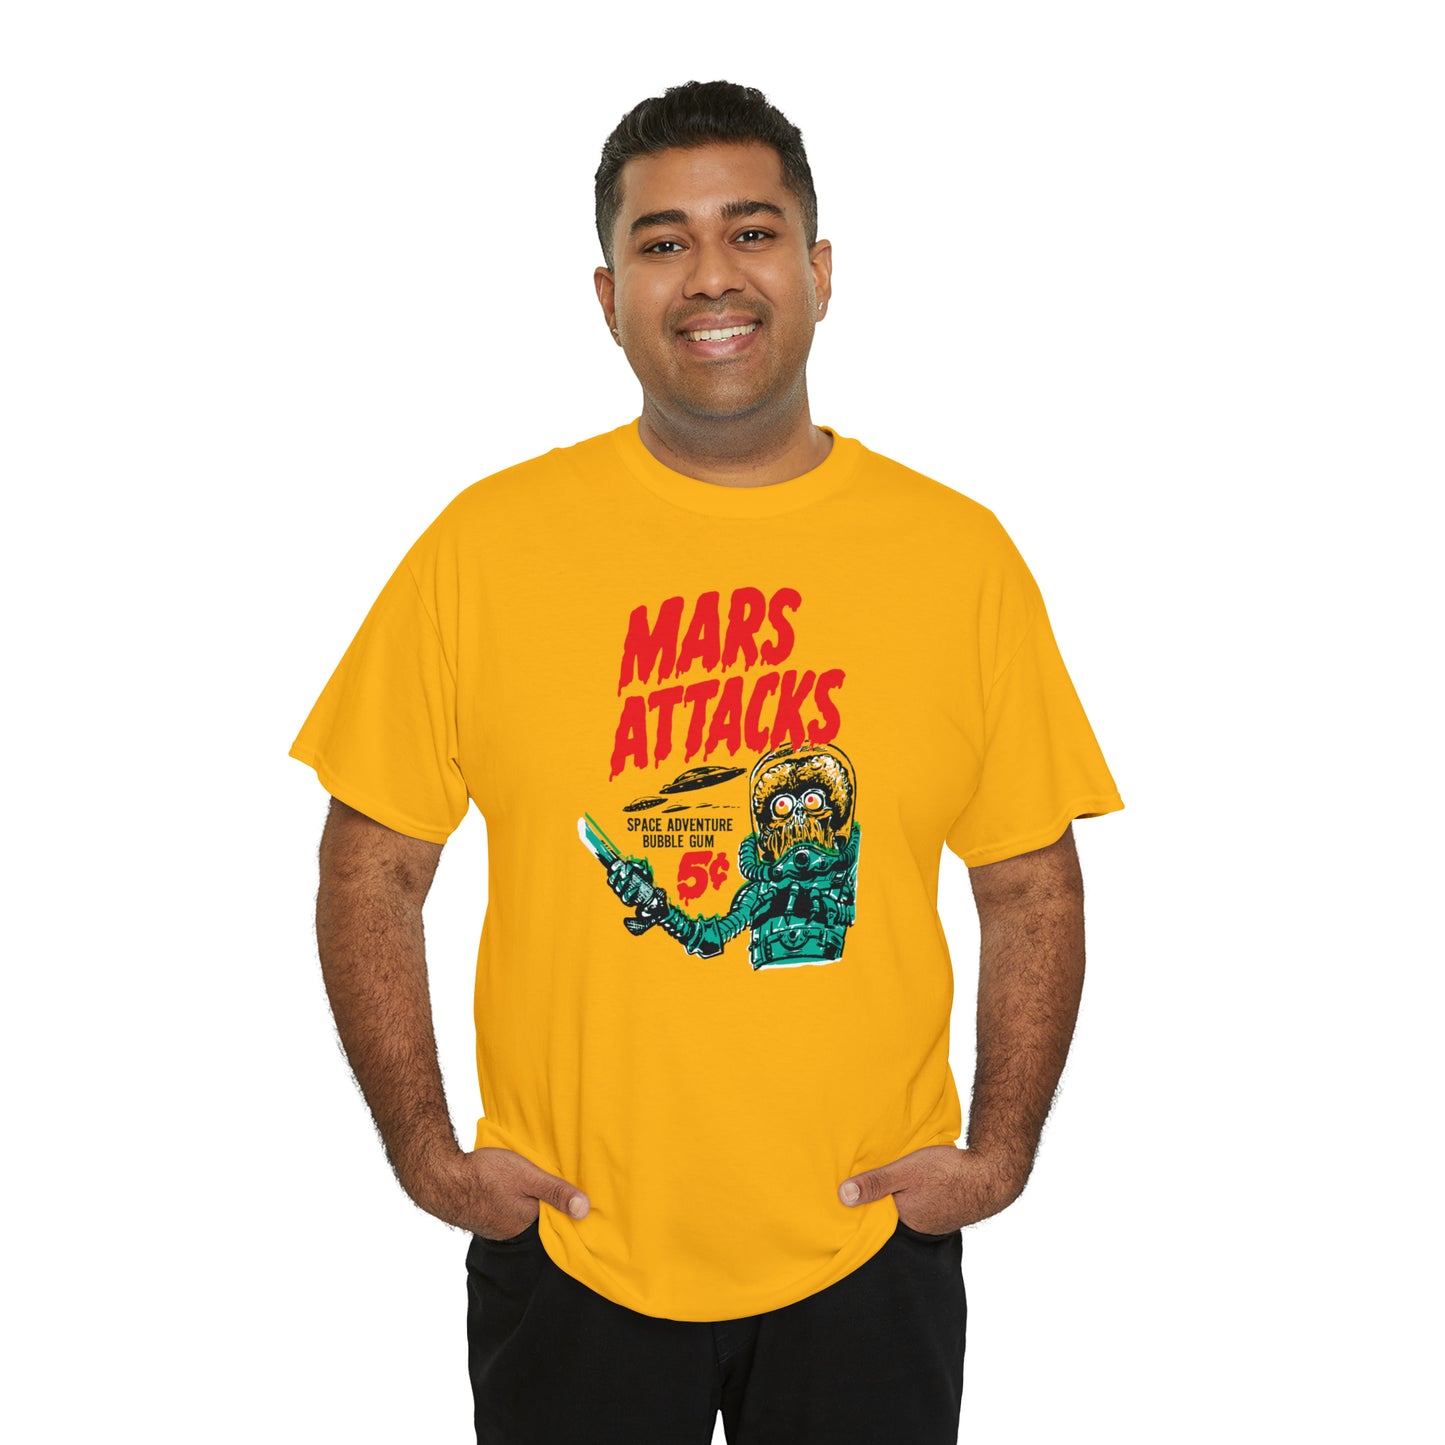 Mars Attacks T-Shirt